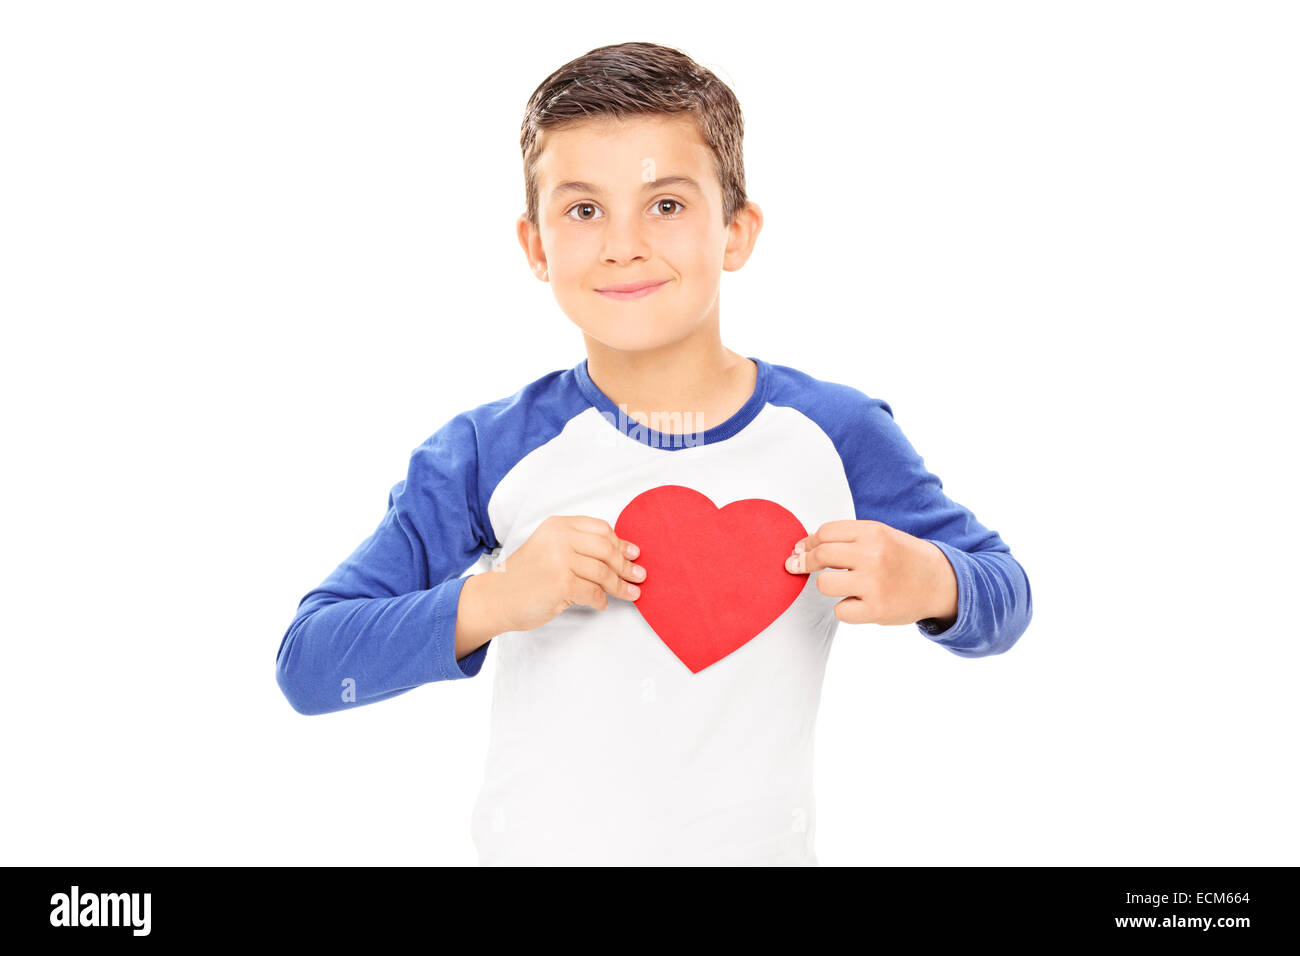 Niedlicher kleine Junge hält ein Herz geformt Pappe auf seiner Brust isoliert auf weißem Hintergrund Stockfoto